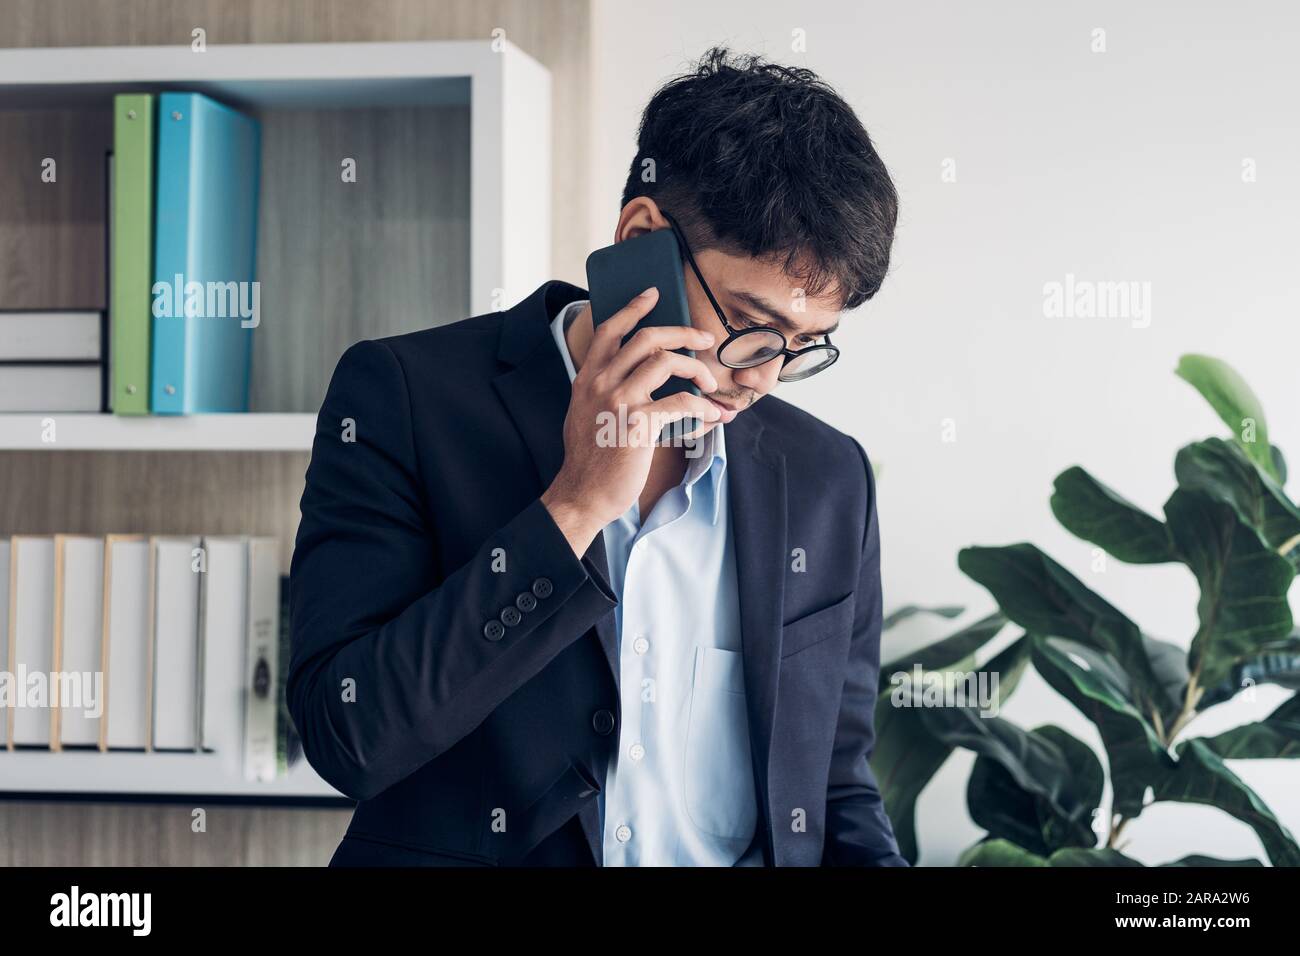 Junge asiatische Geschäftsmann tragen Anzug sprechen auf mobile und siehe Schreibarbeit am Schreibtisch Tisch in modernen Büro. Kontakt mit Kunden Konzept Stockfoto